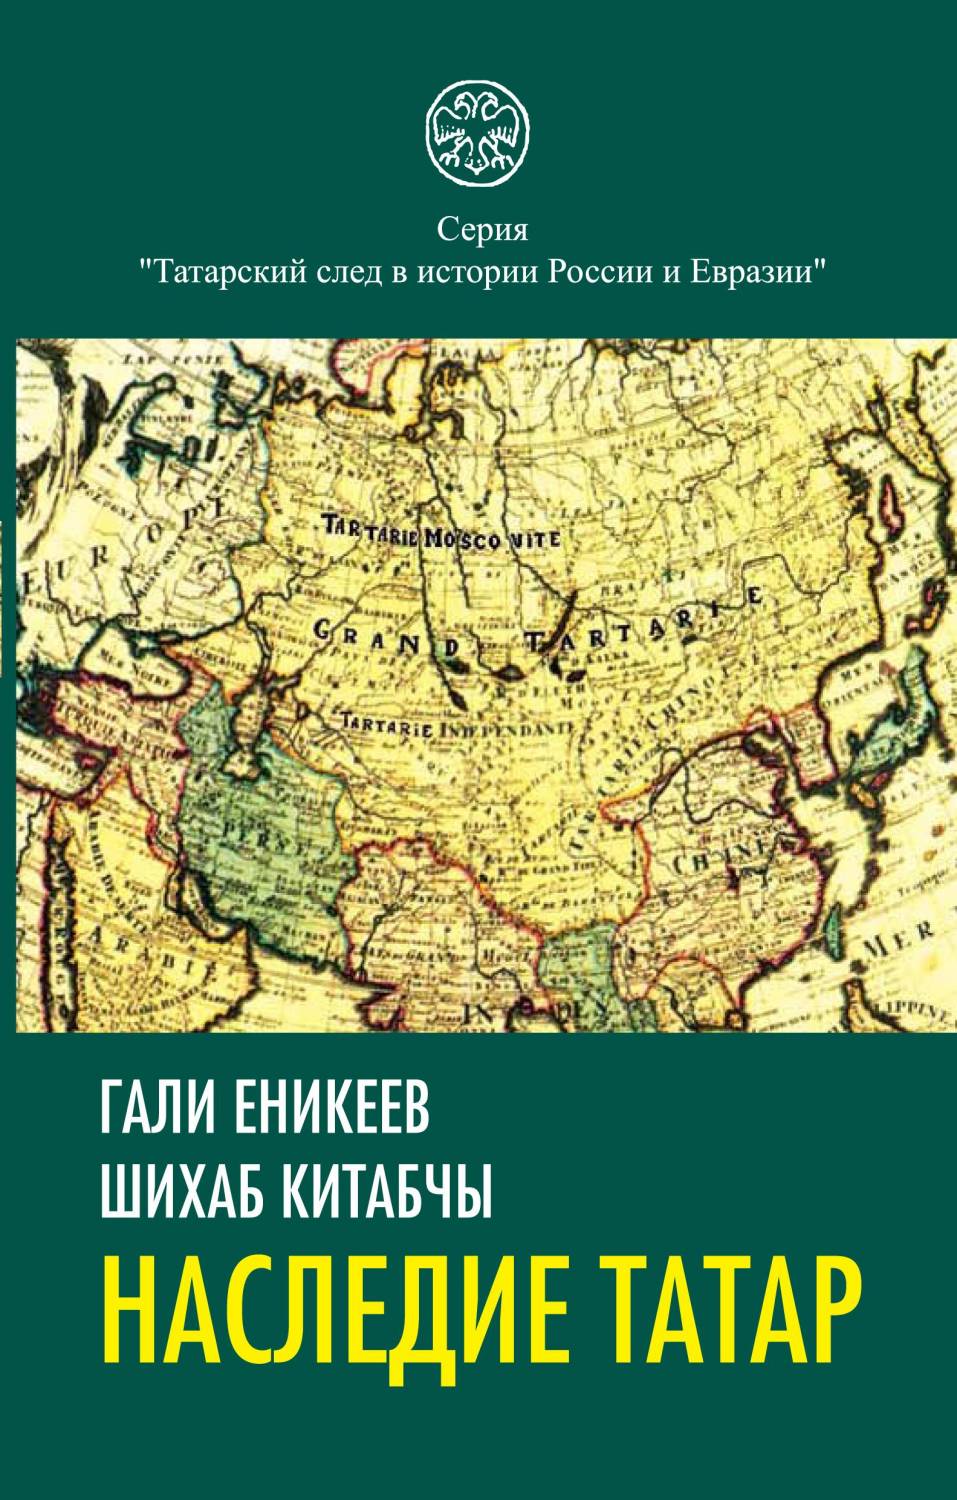 Скачать электронные книги бесплатно татарские